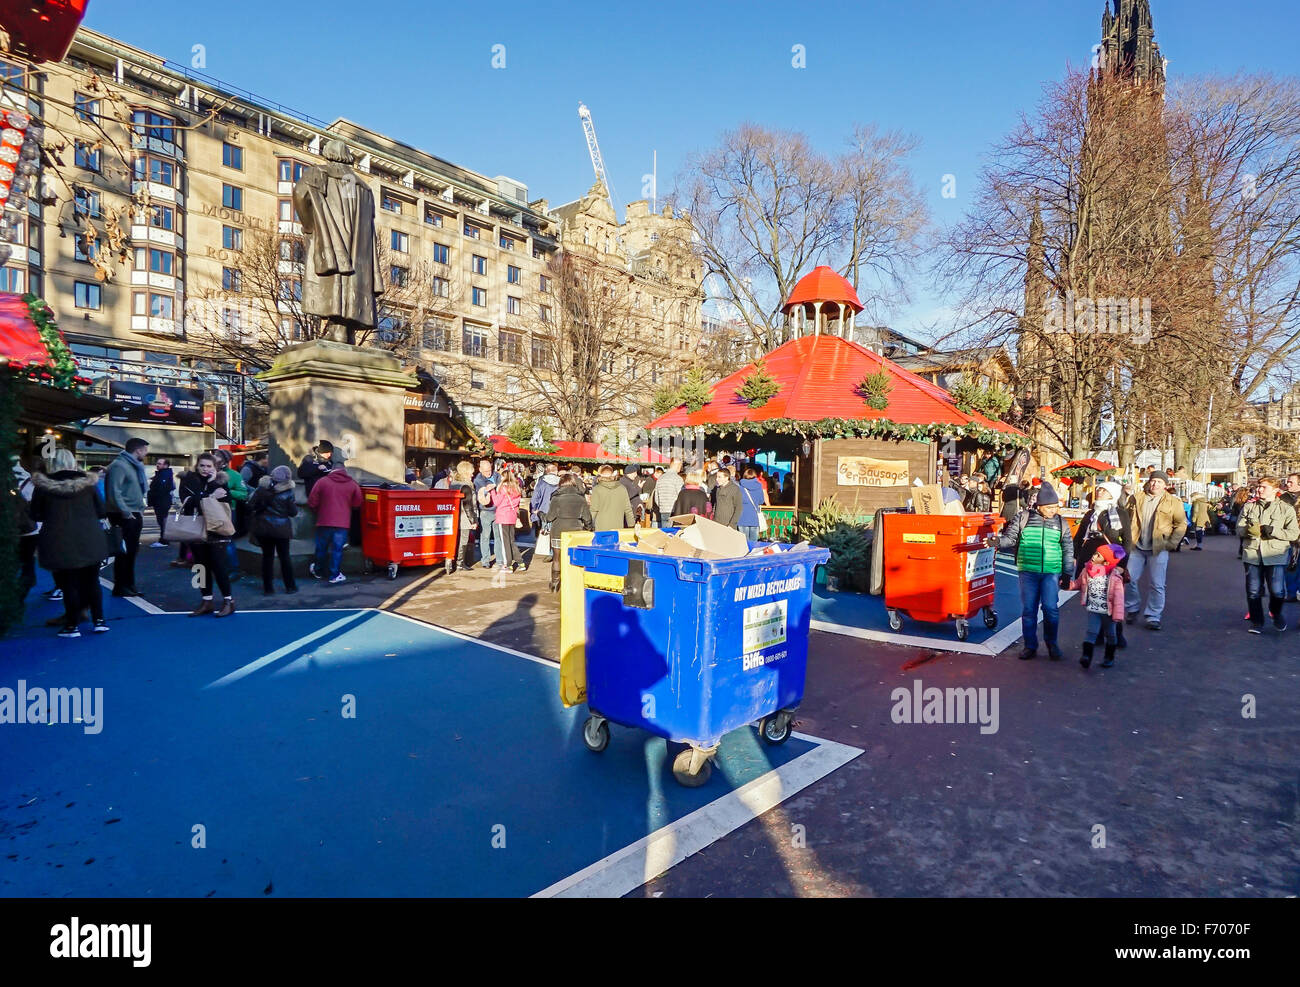 Edinburgh-Weihnachten Markt 2015 zeigt Stände und Abfallbehälter prominent angezeigt und verwendet. Stockfoto